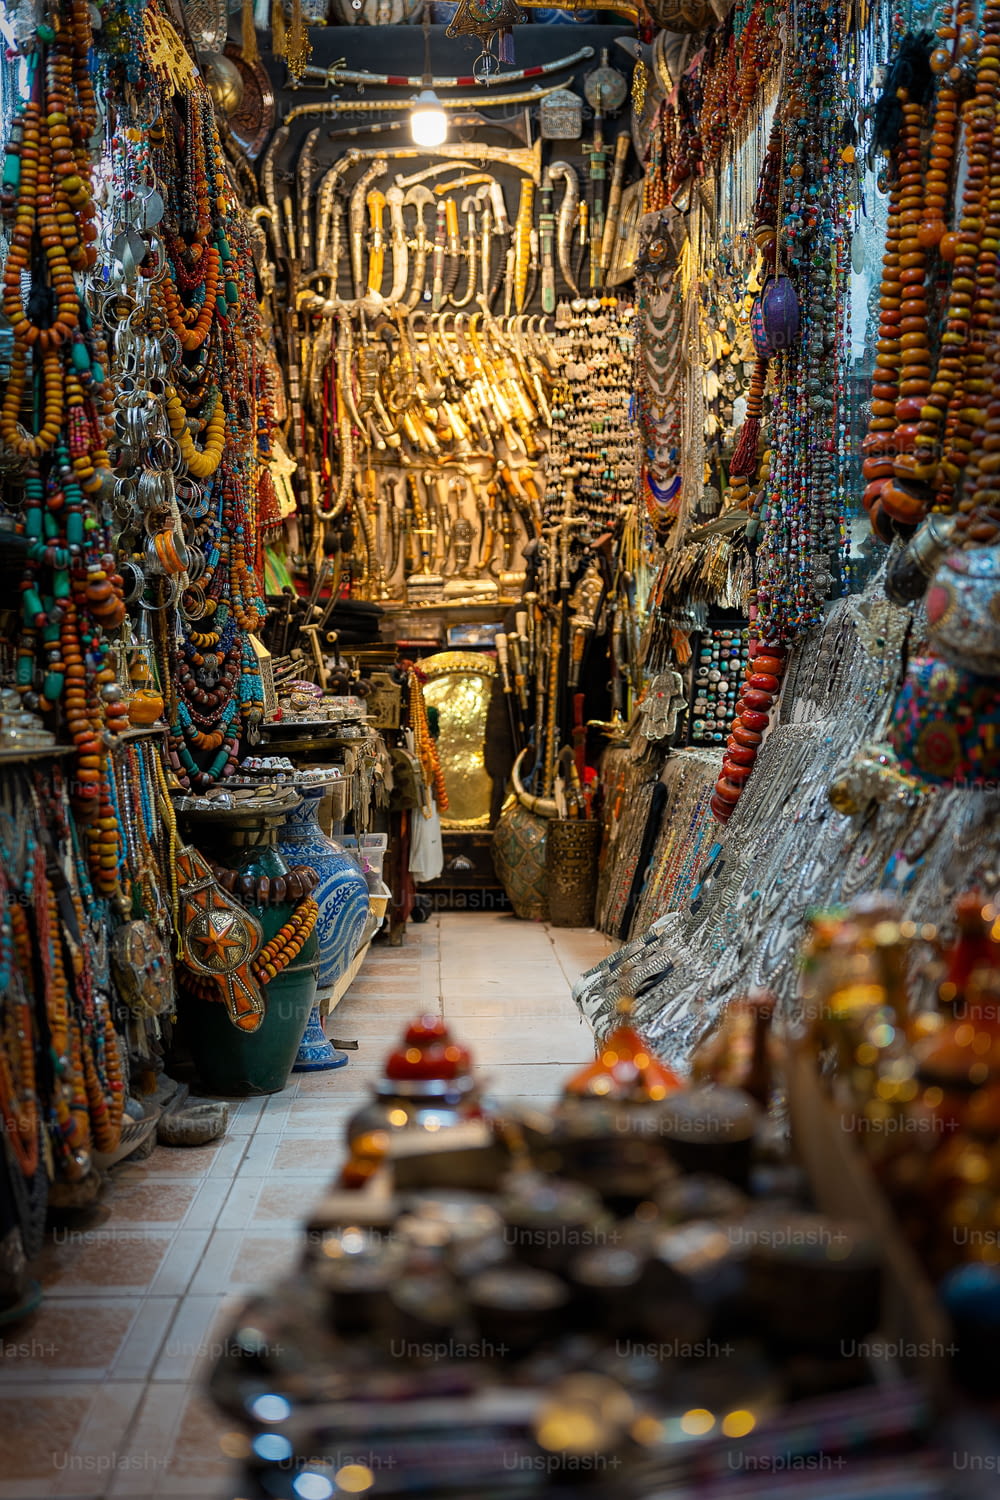 Una toma vertical de una tienda en Medina, Marrakech, Marruecos